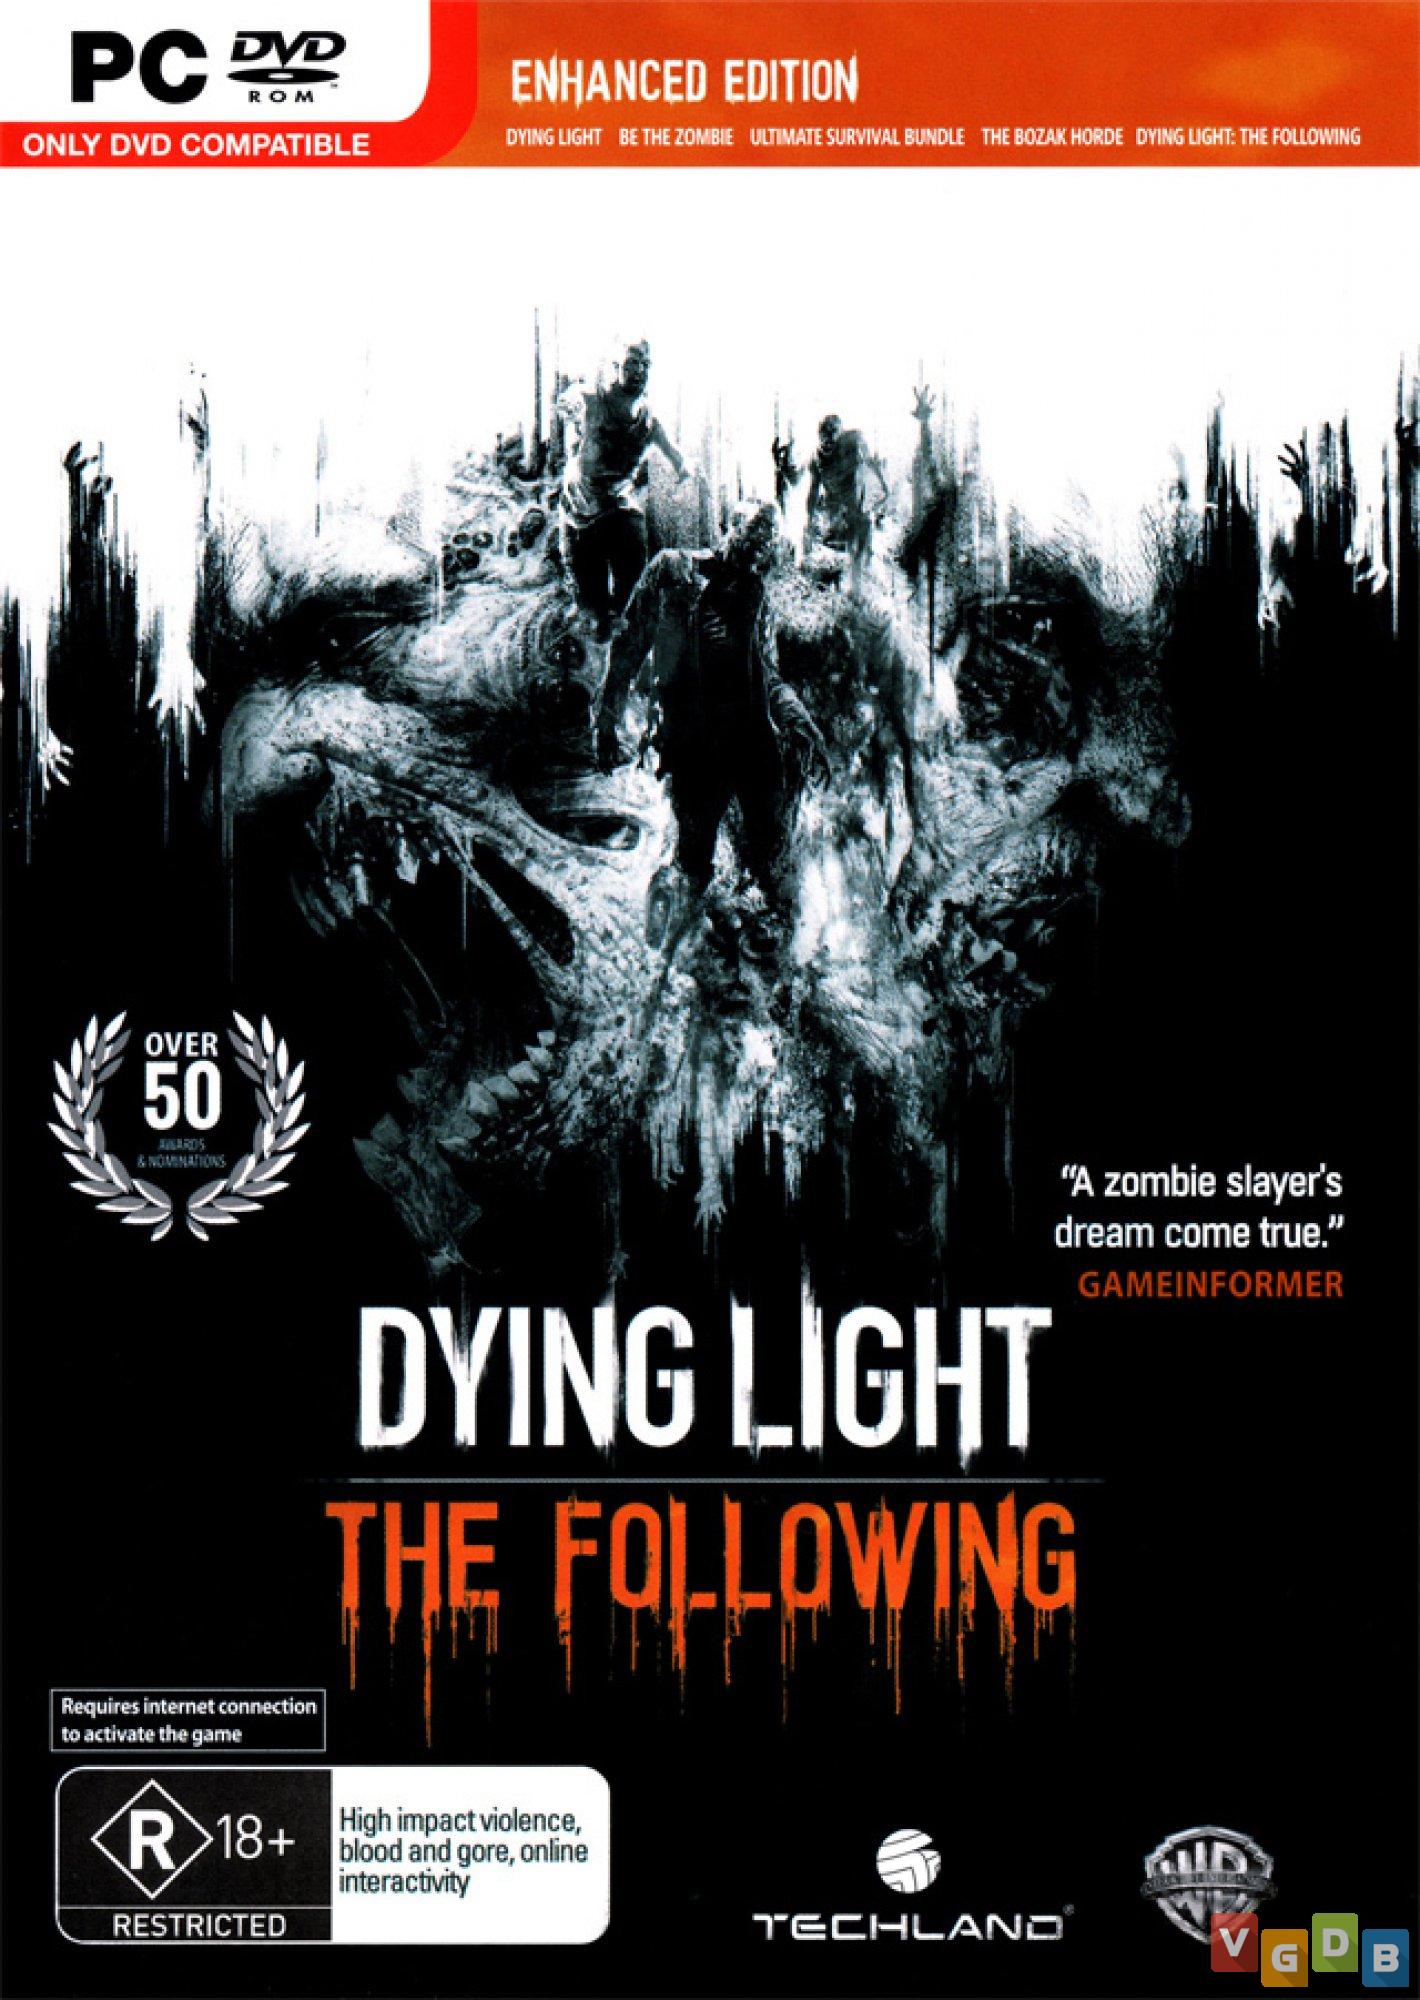 Dying Light - PS4 (Mídia Física) - USADO - Nova Era Games e Informática